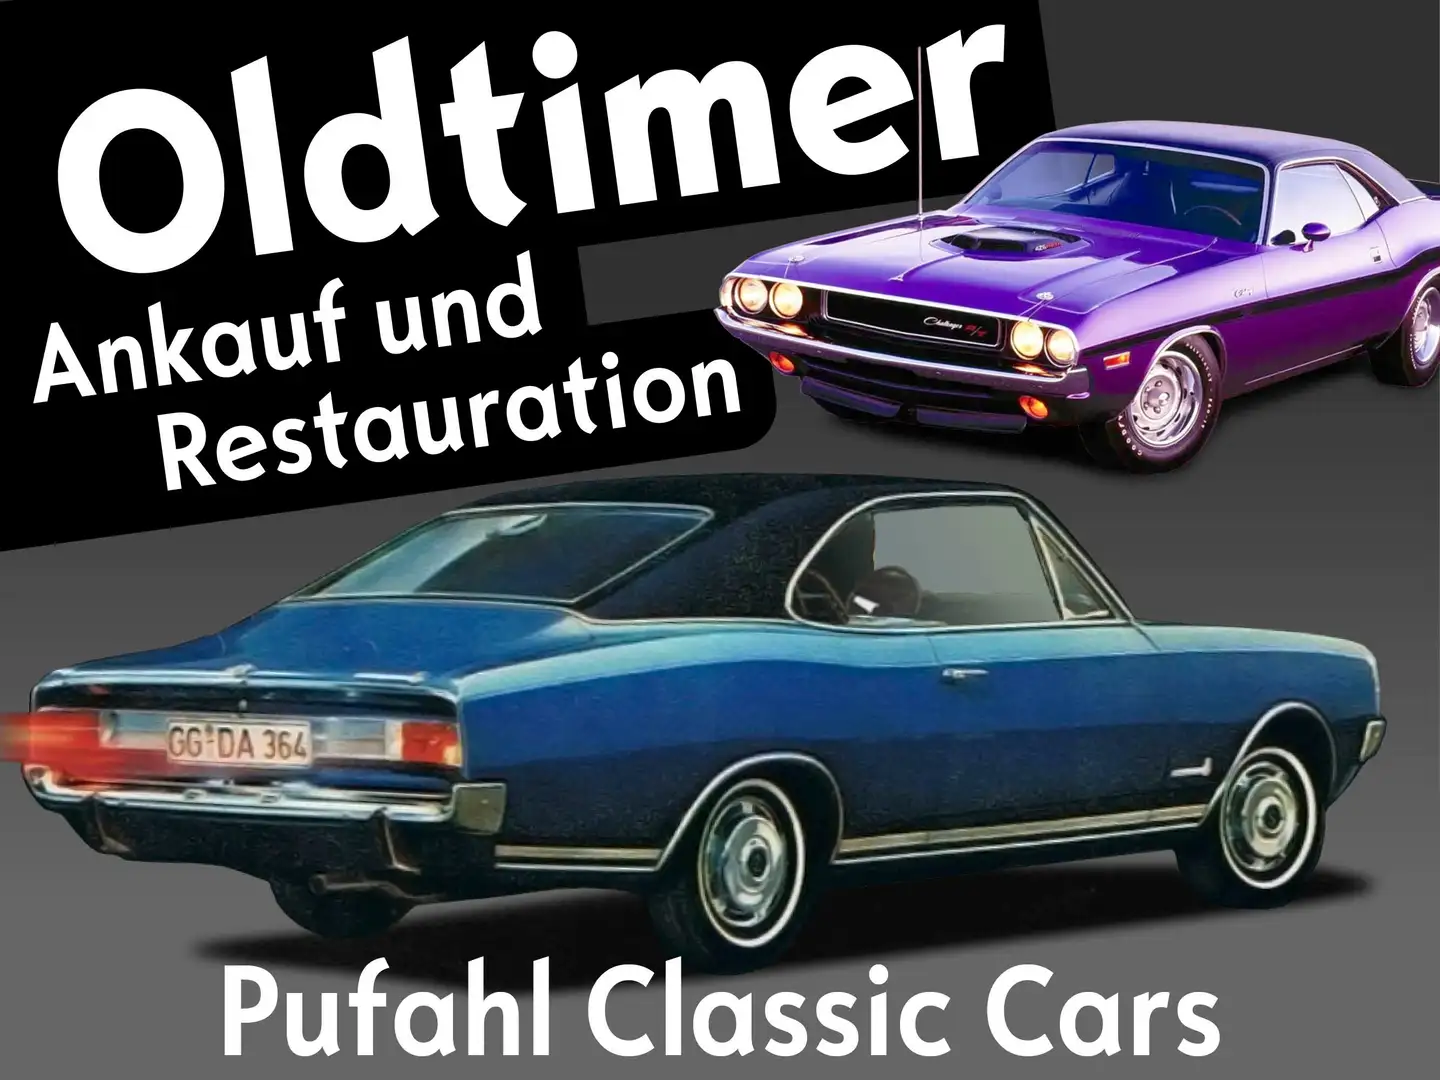 Pontiac Firebird Pufahl Classic Cars Ankauf und Restauration Negro - 1